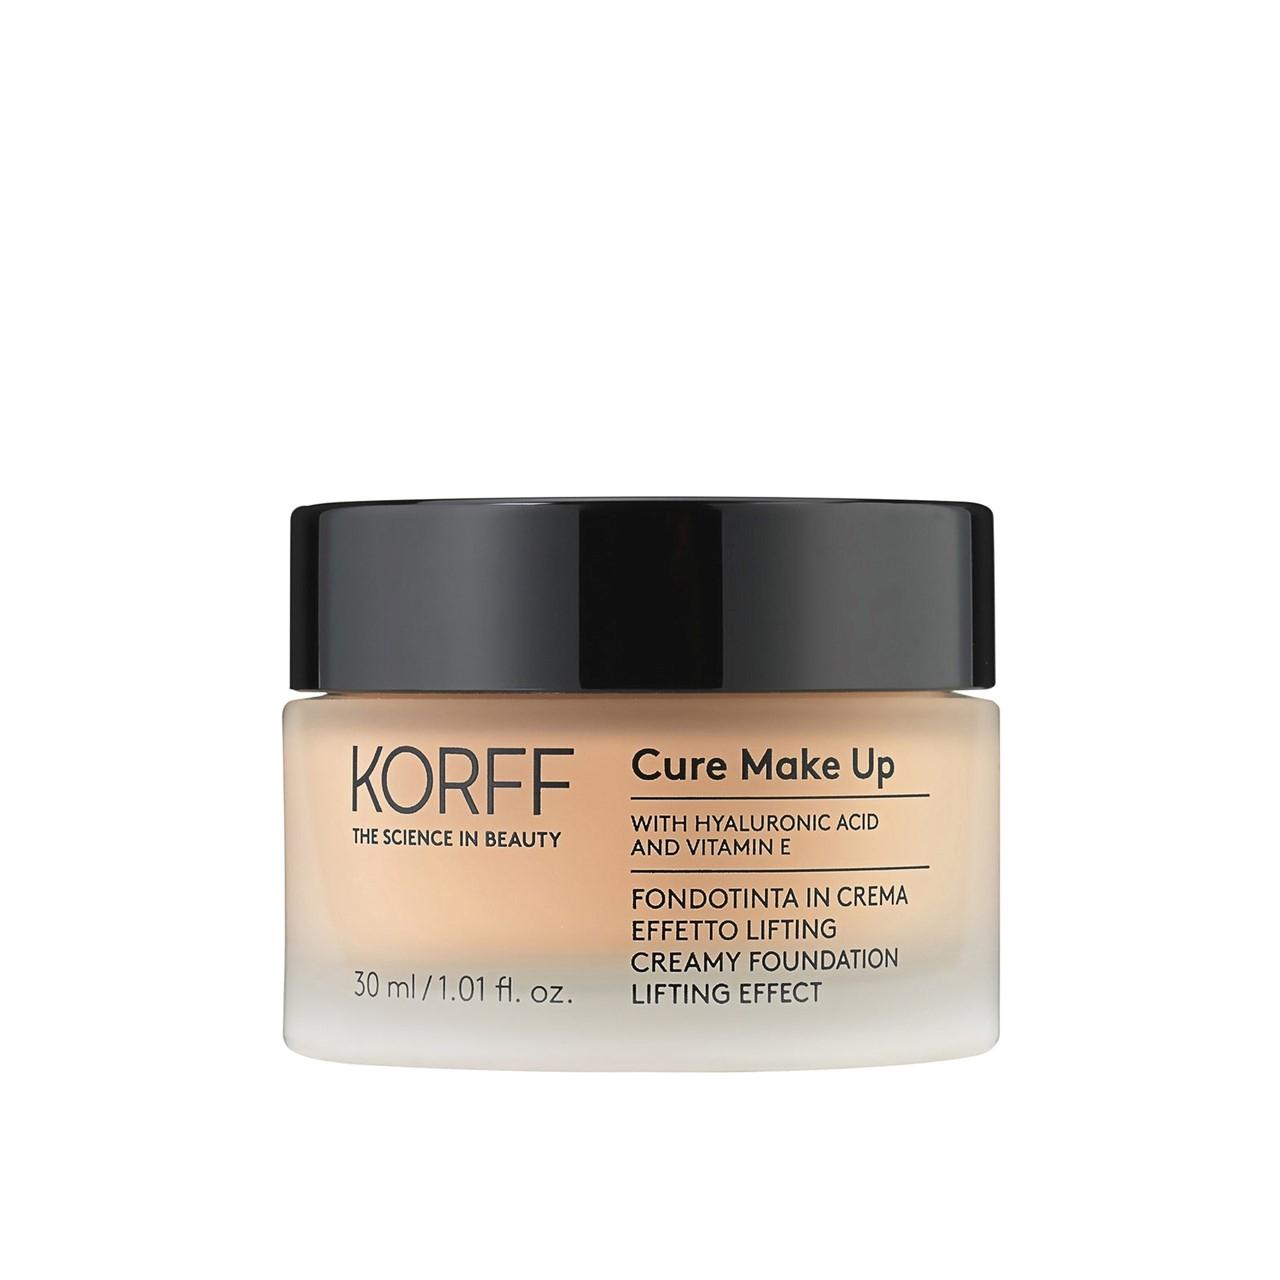 Korff Cure Make-Up Creamy Foundation Lifting Effect 04 30ml (1.01 fl oz)